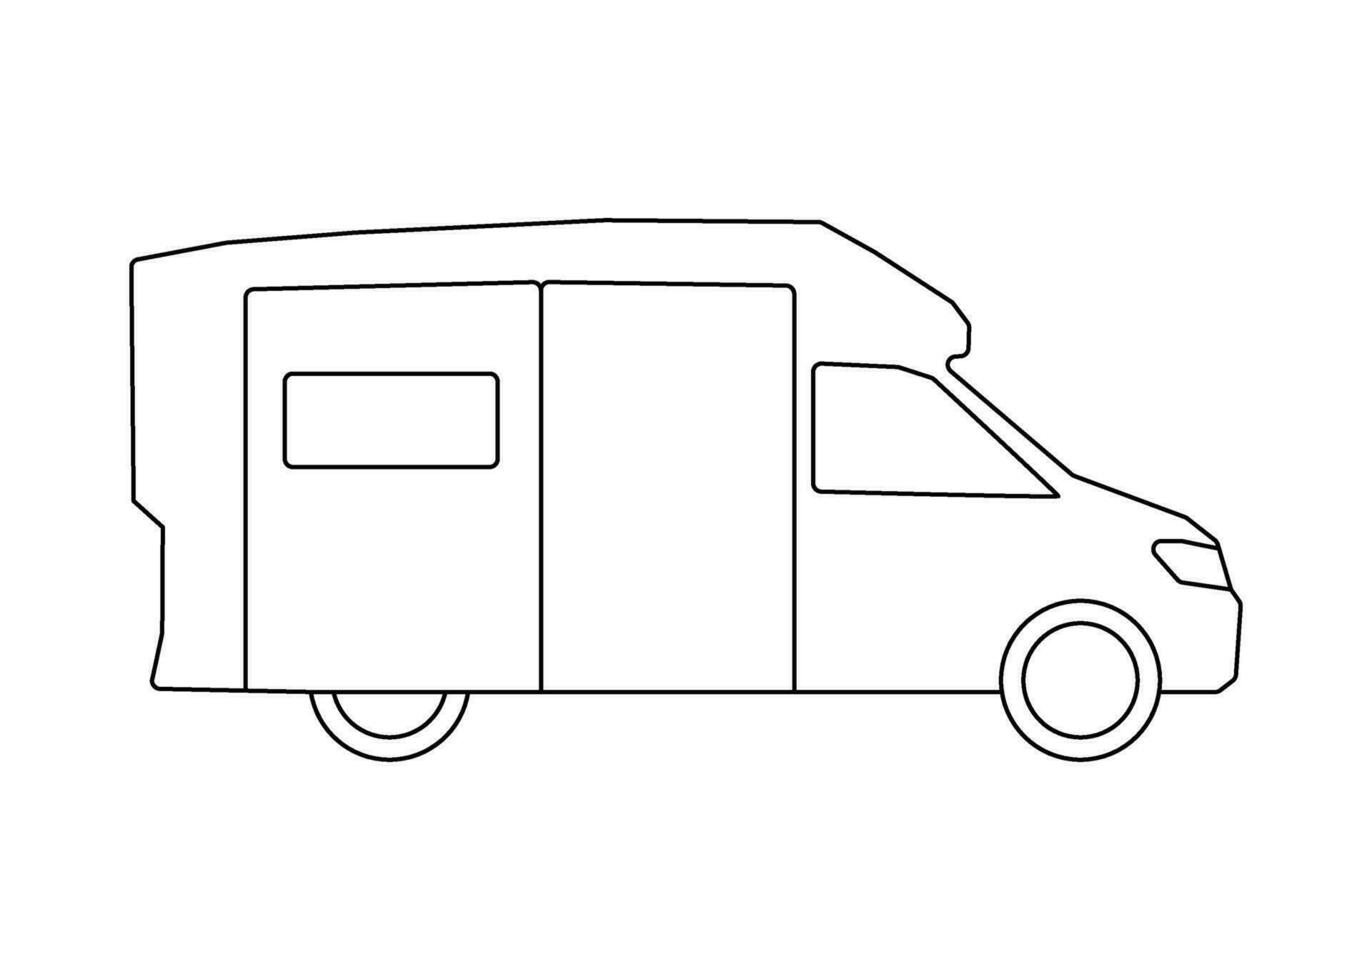 Car campervan transport model coloring line icon. Own passenger transport, automobile for travel. Vector sign outline illustration